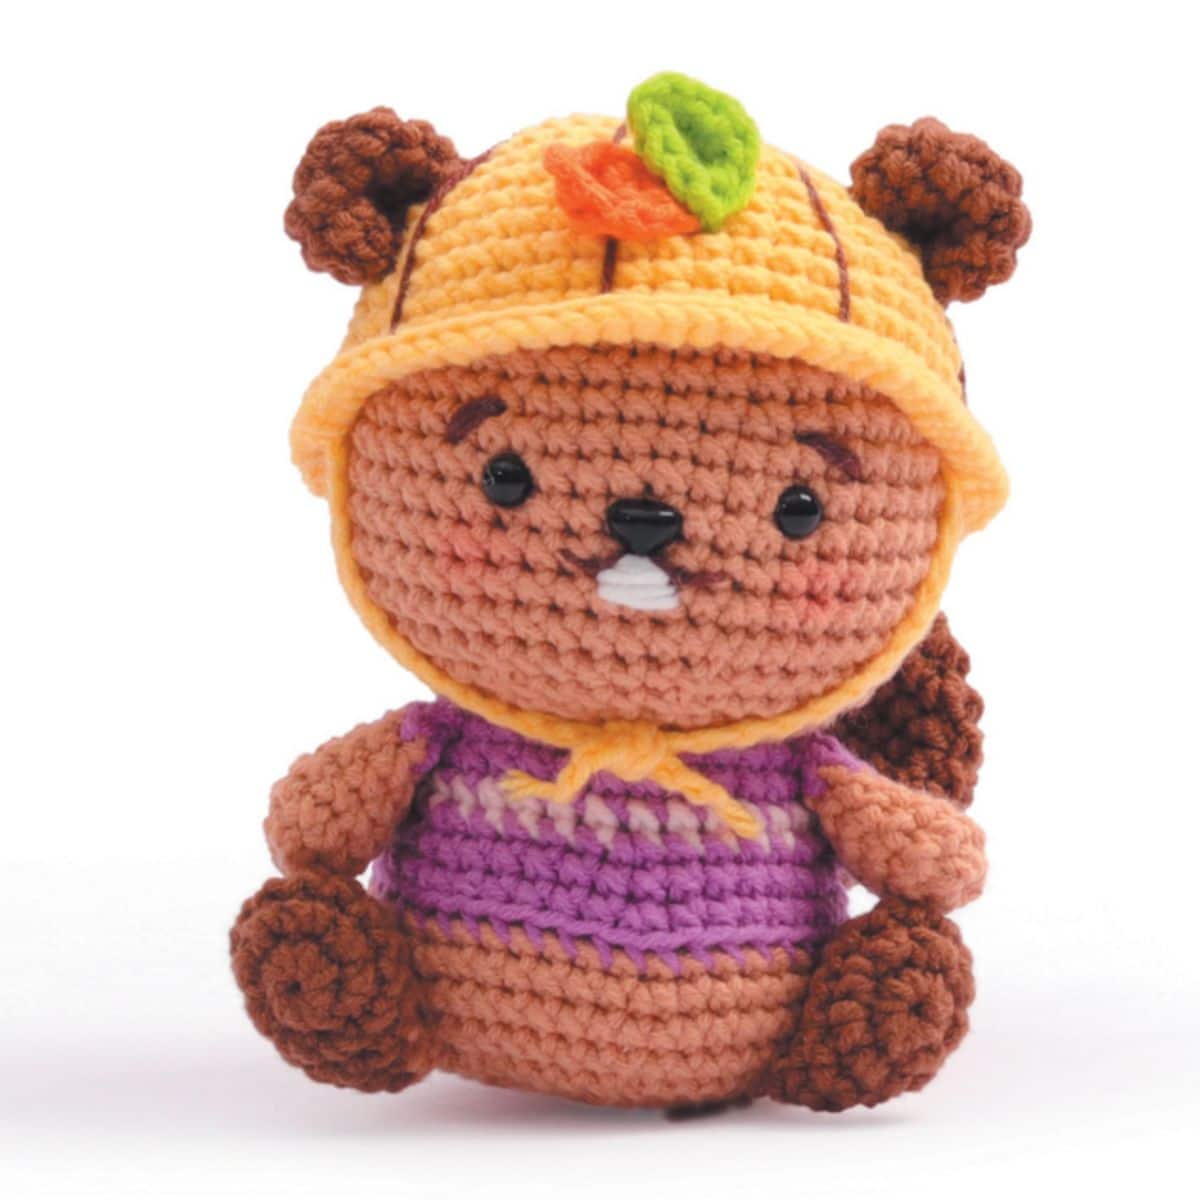 Kit Amigurumi Castor Crochet - N/A - Kiabi - 19.99€